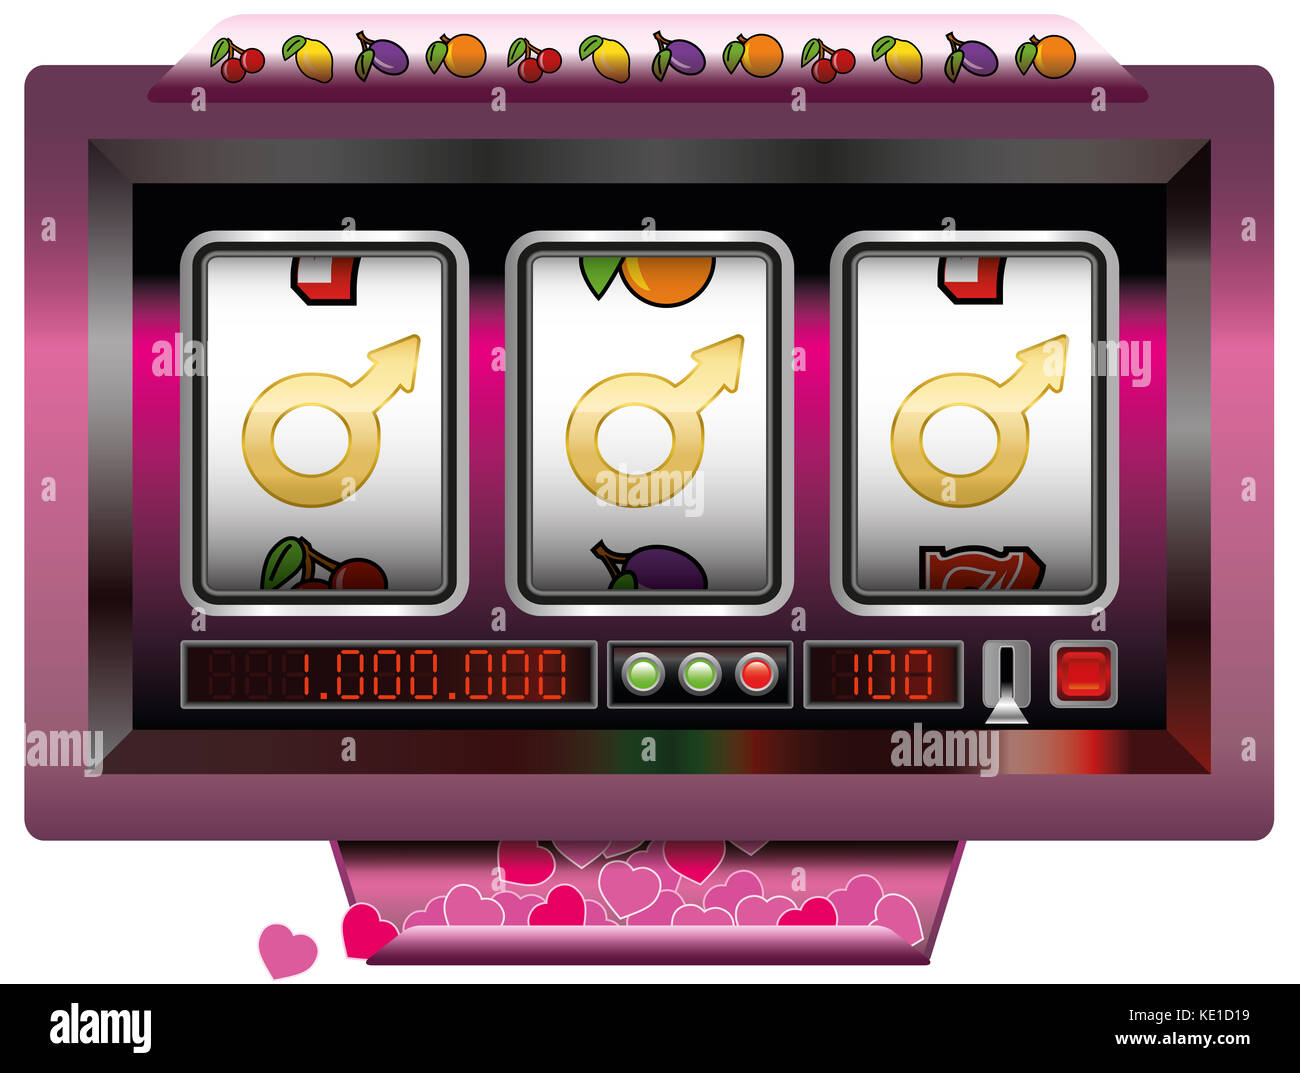 Dream Lover gewinnen mit Slot Machine - Symbol für Glück der ideale Mann - Spielautomaten Jackpot mit drei männlichen Zeichen zu finden. Stockfoto